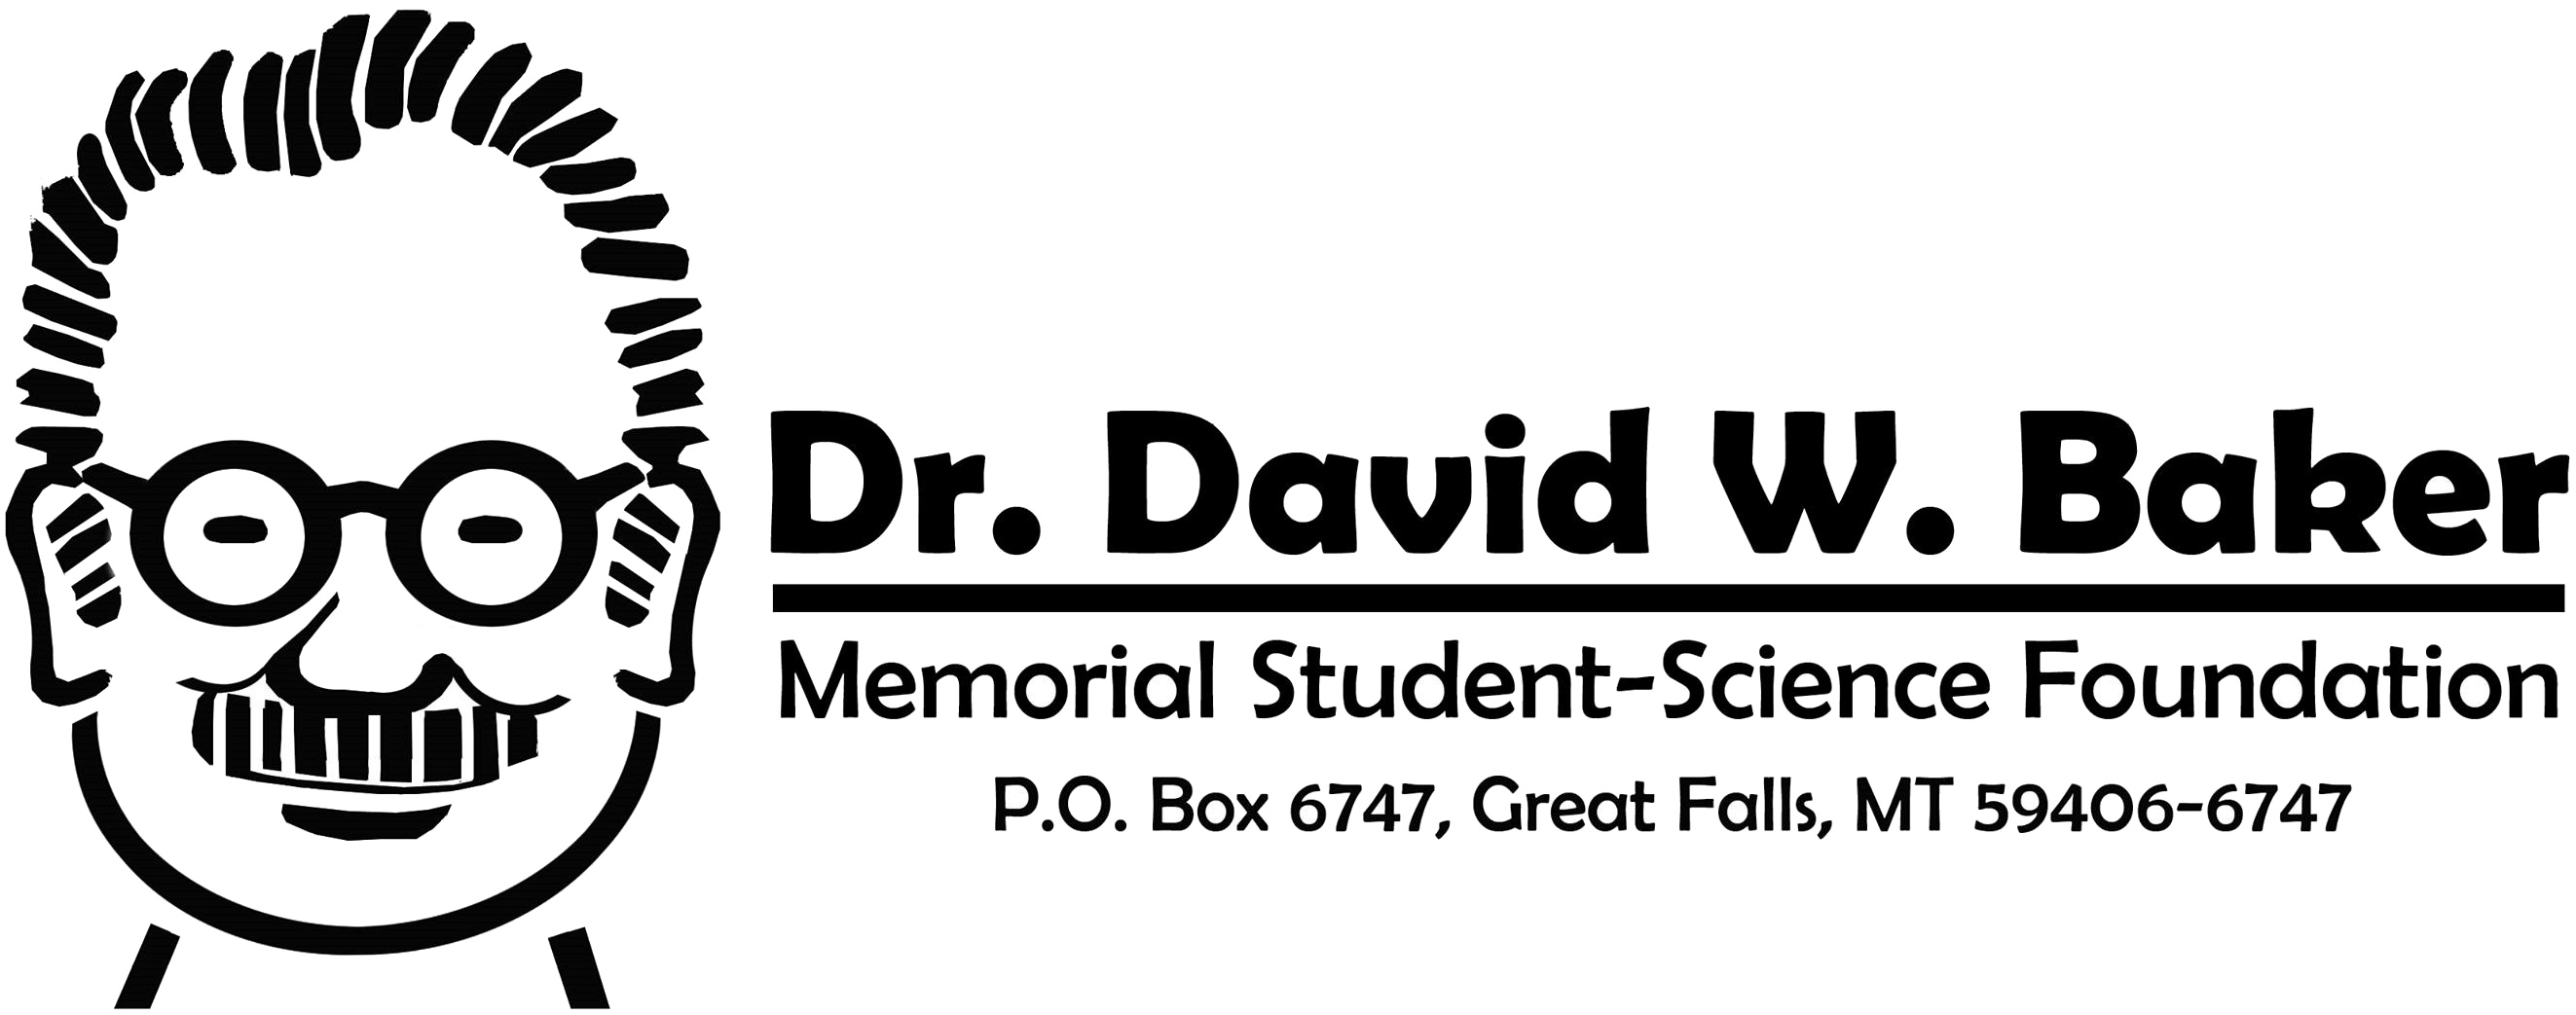 Dr. David W Baker Foundation